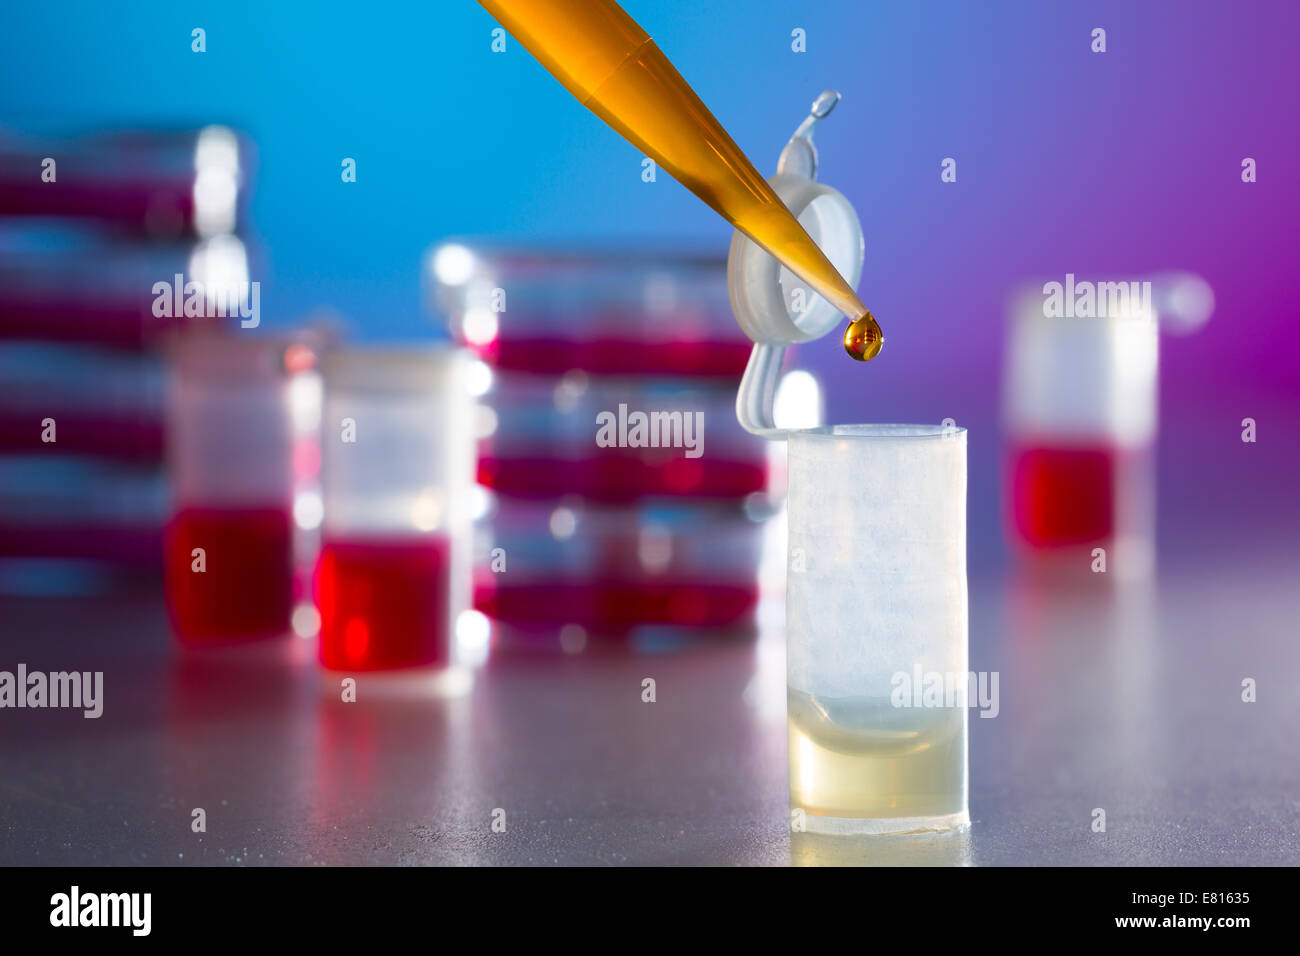 Della ricerca sulle allergie in laboratorio, piastra di petri e la pipetta Foto Stock